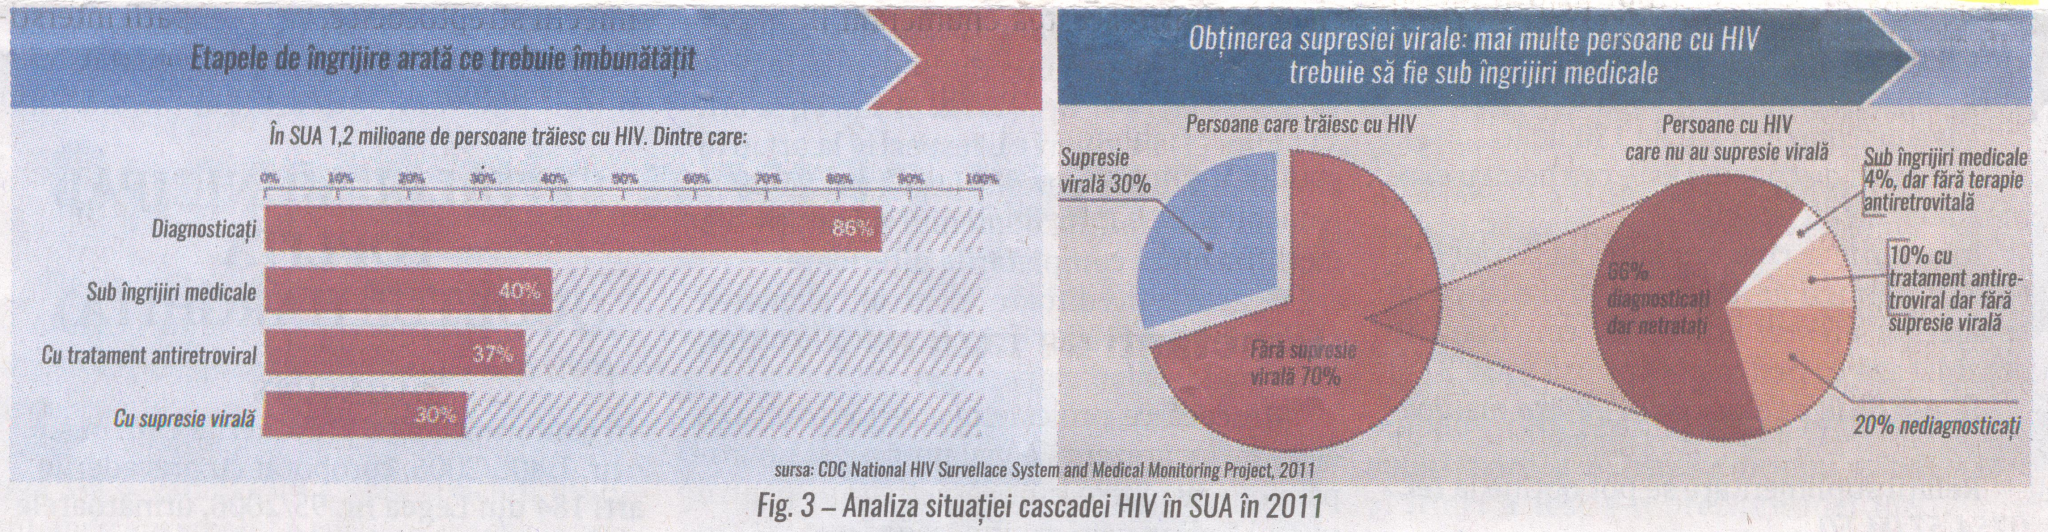 fig.3 Analiza situatiei cascadei HIV in SUA in 2011